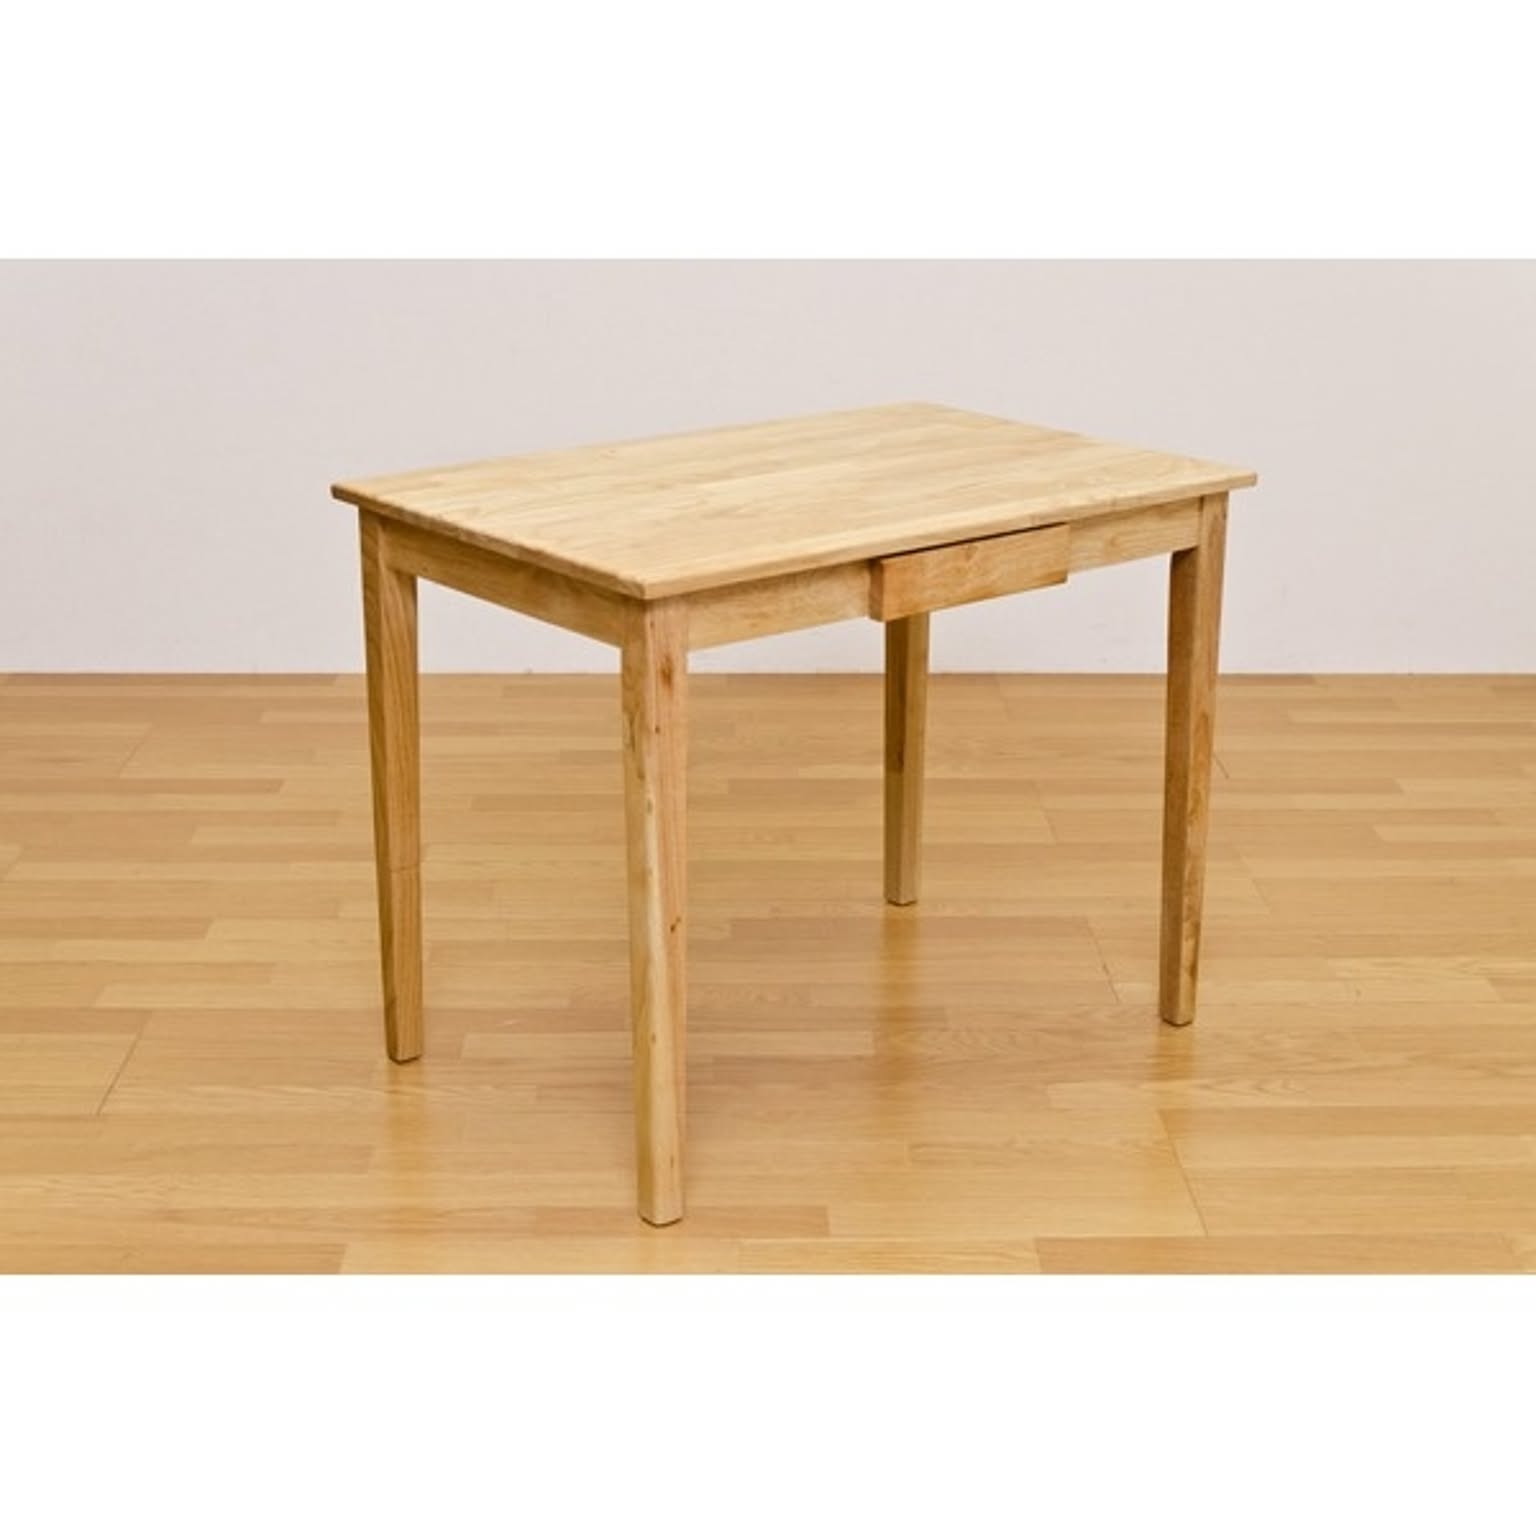 木製テーブル 長方形 90cm×60cm 引出し1杯付き ナチュラル 木目調 〔リビング/ダイニング/作業台〕